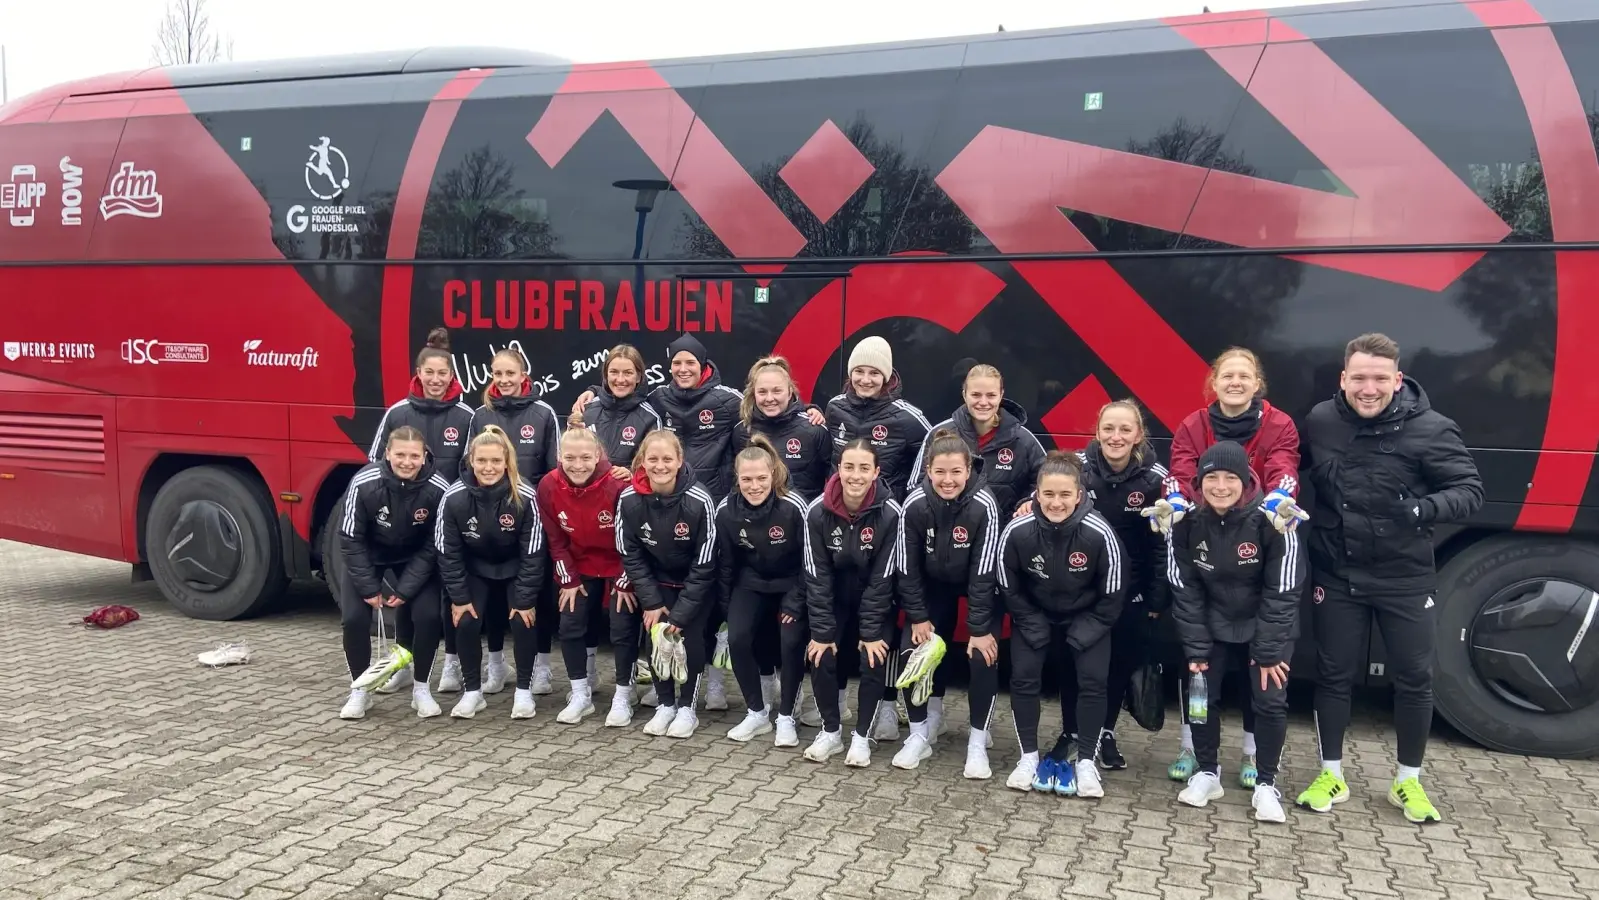 Die Bundesliga-Damen vom 1. FC Nürnberg mit Trainer Thomas Oostendorp vor dem Mannschaftsbus auf dem Parkplatz der SG Taucha. (Foto: taucha-kompakt.de)